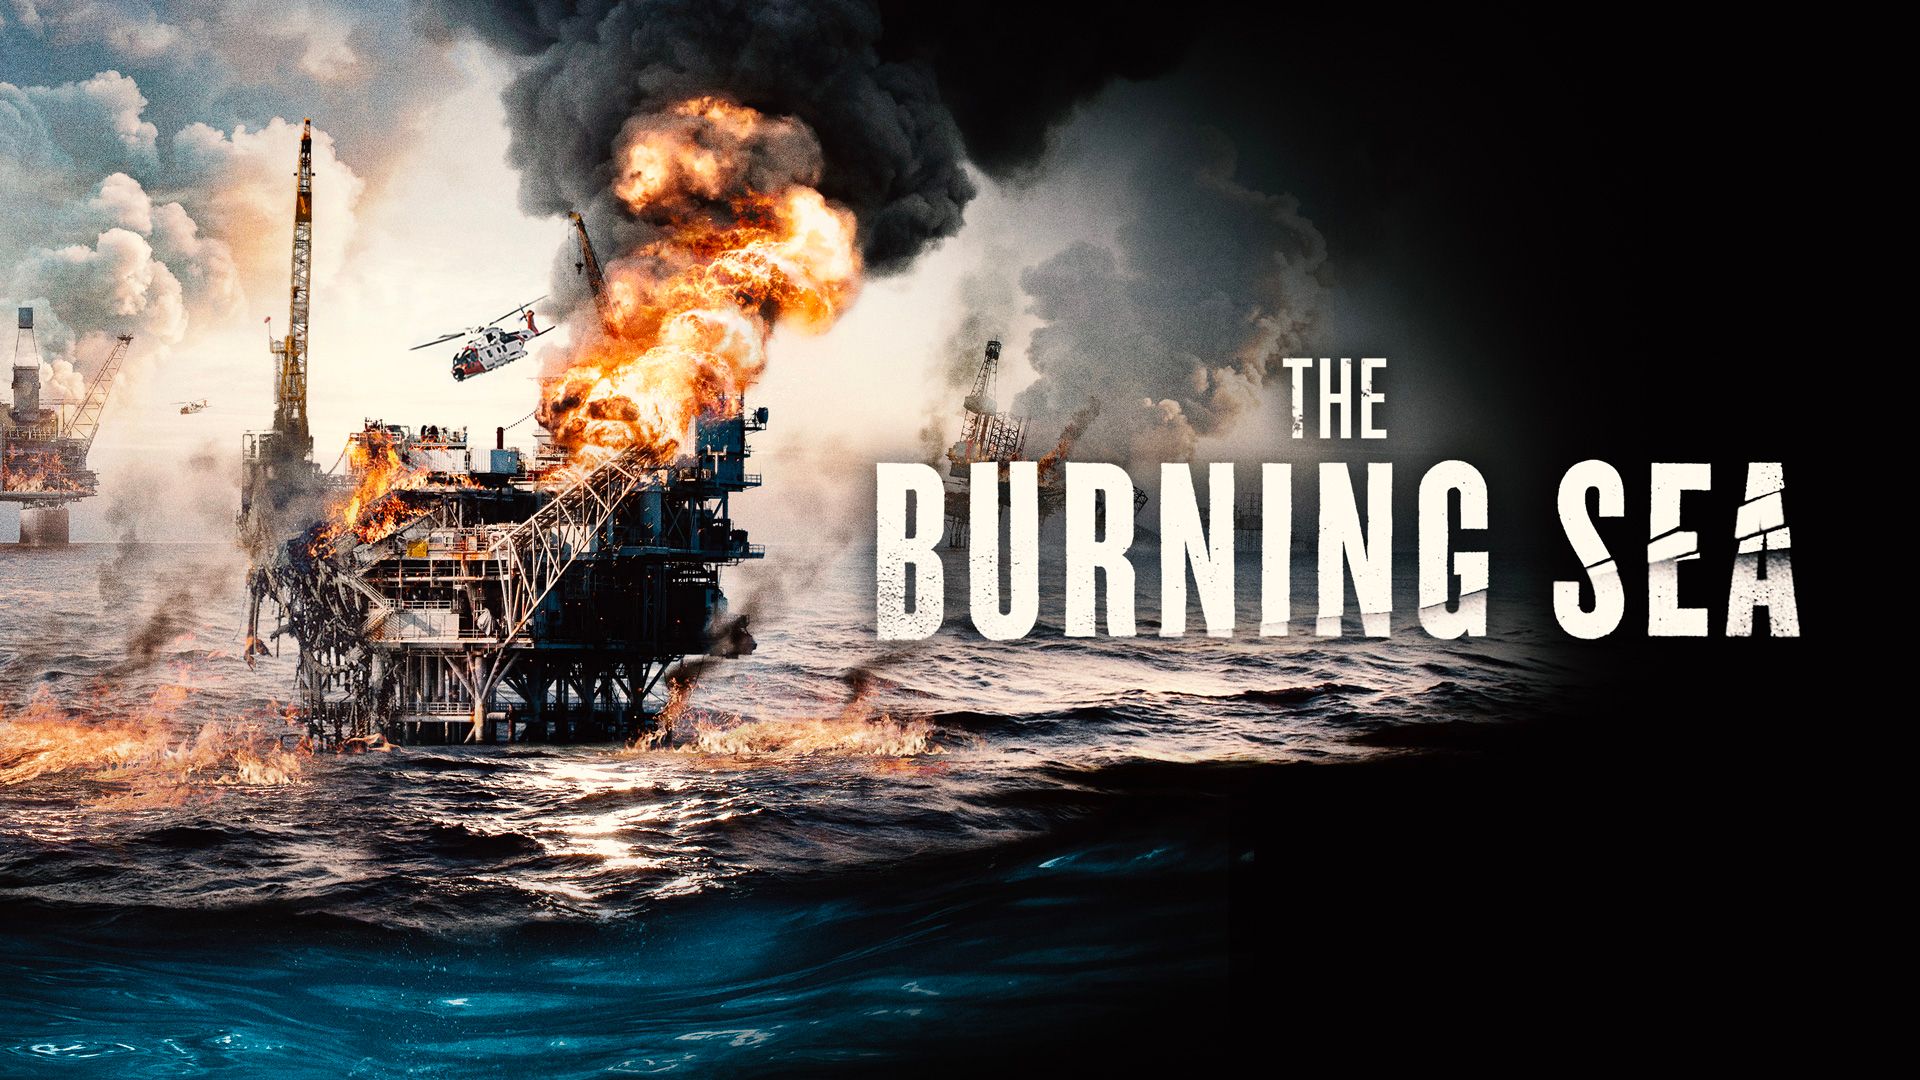 The Burning Sea landscape image